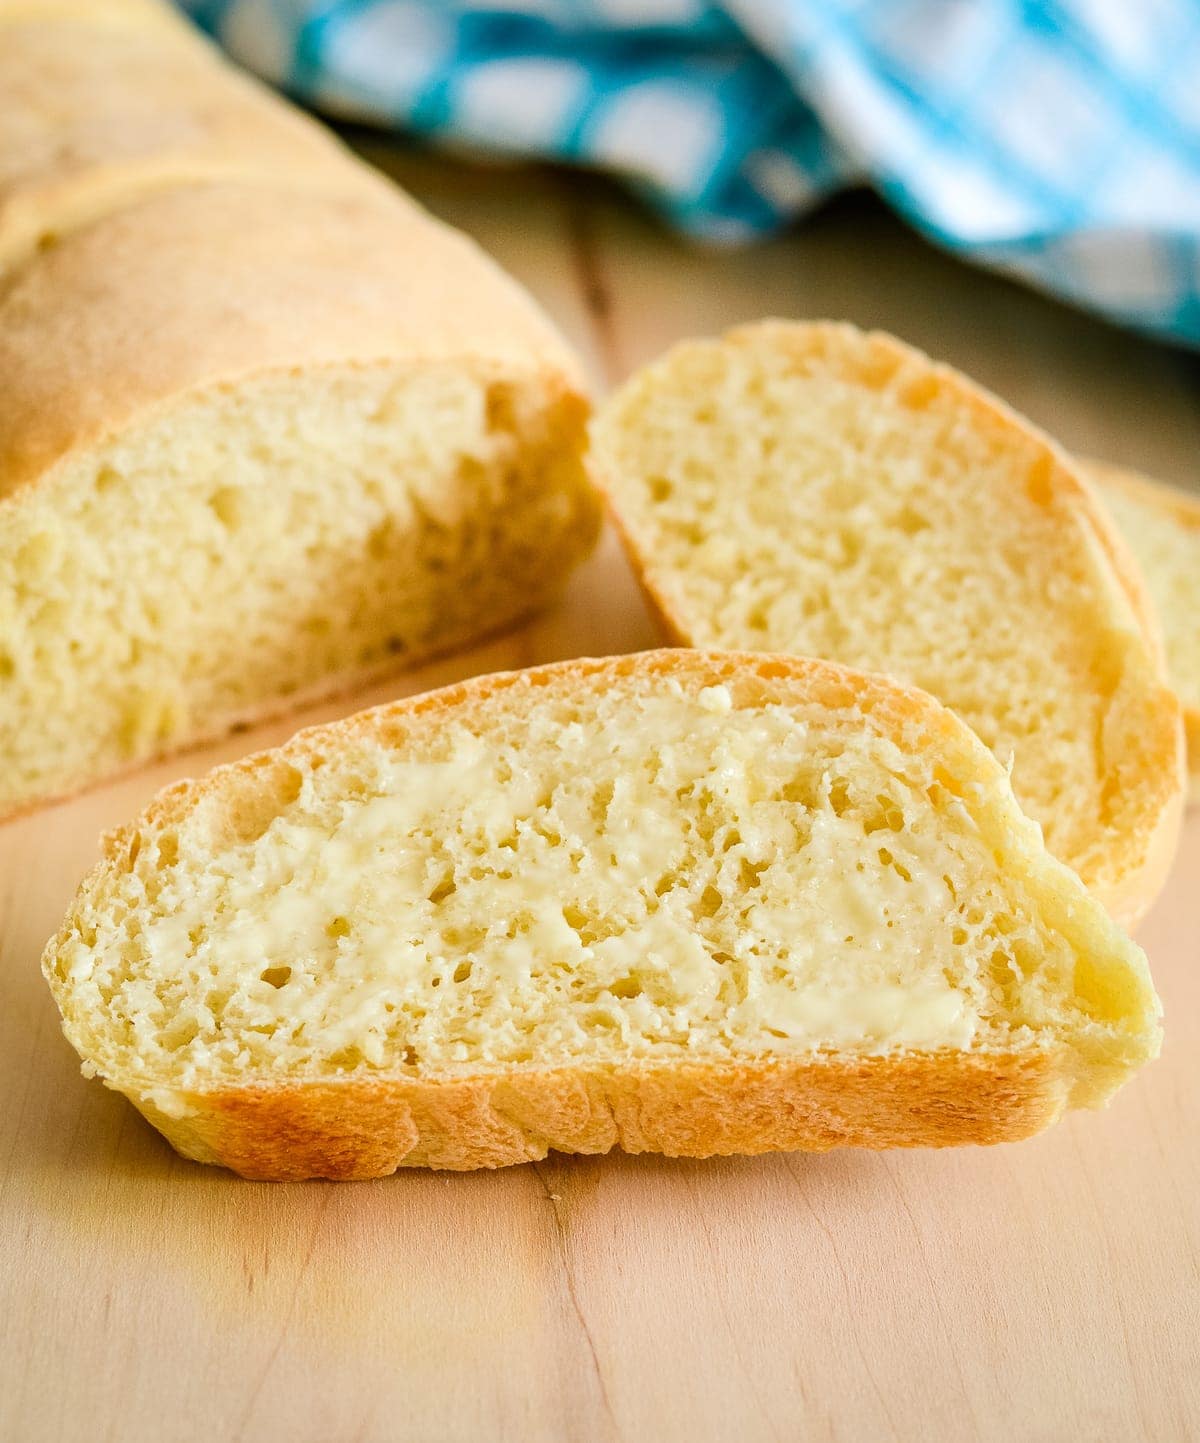 酵母面包食谱:切成薄片的bob综合手机客户意大利面包涂上黄油。